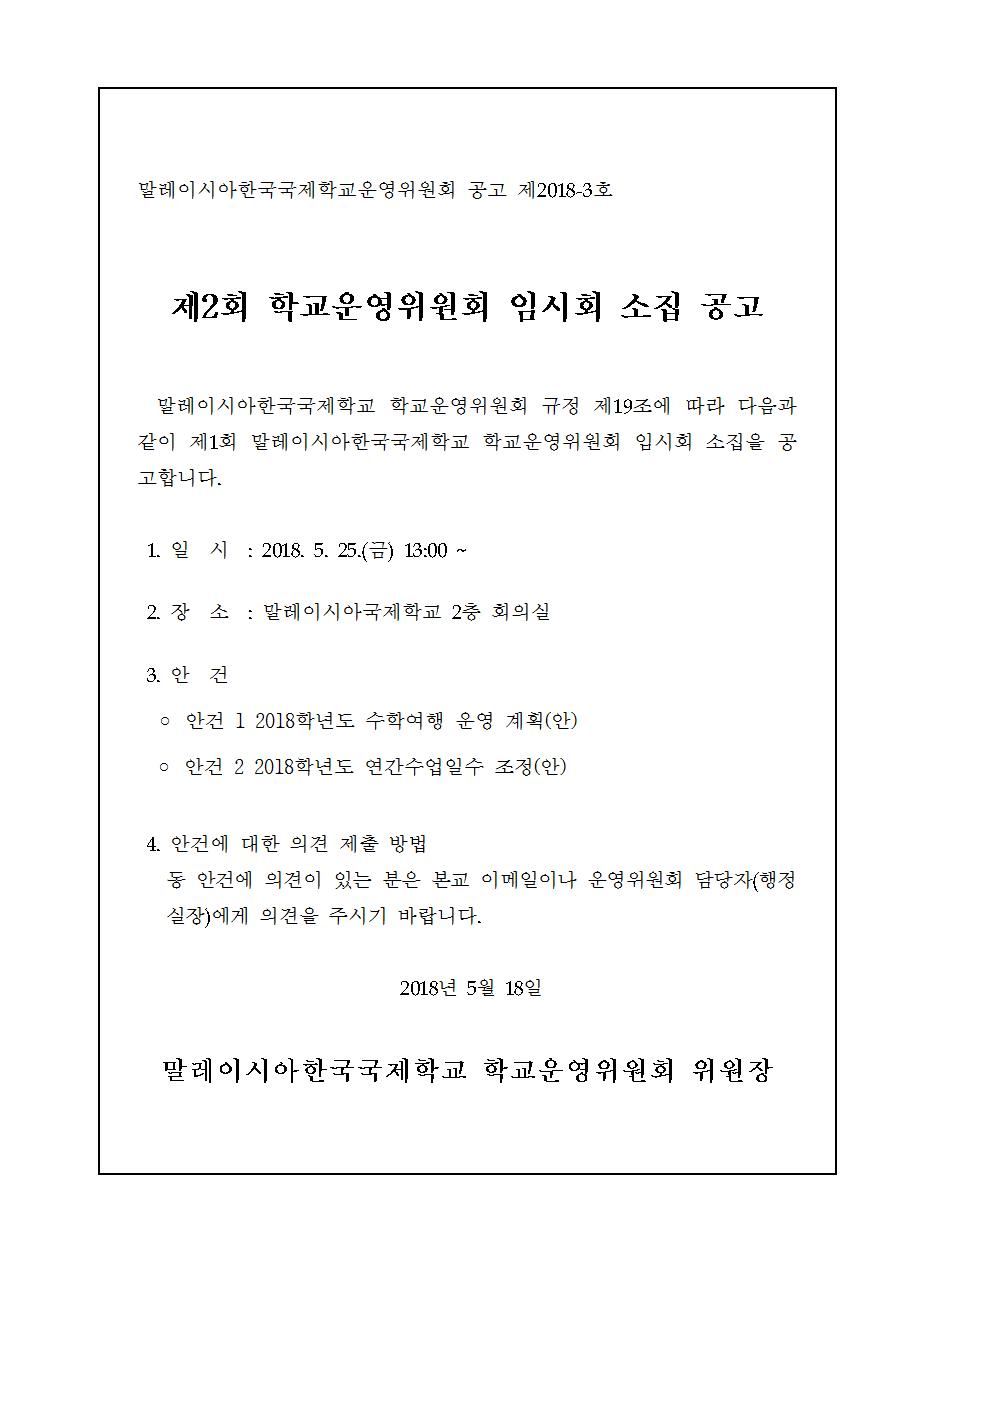 2018-2운영위원회 임시회 개최 알림(시행문)002.jpg